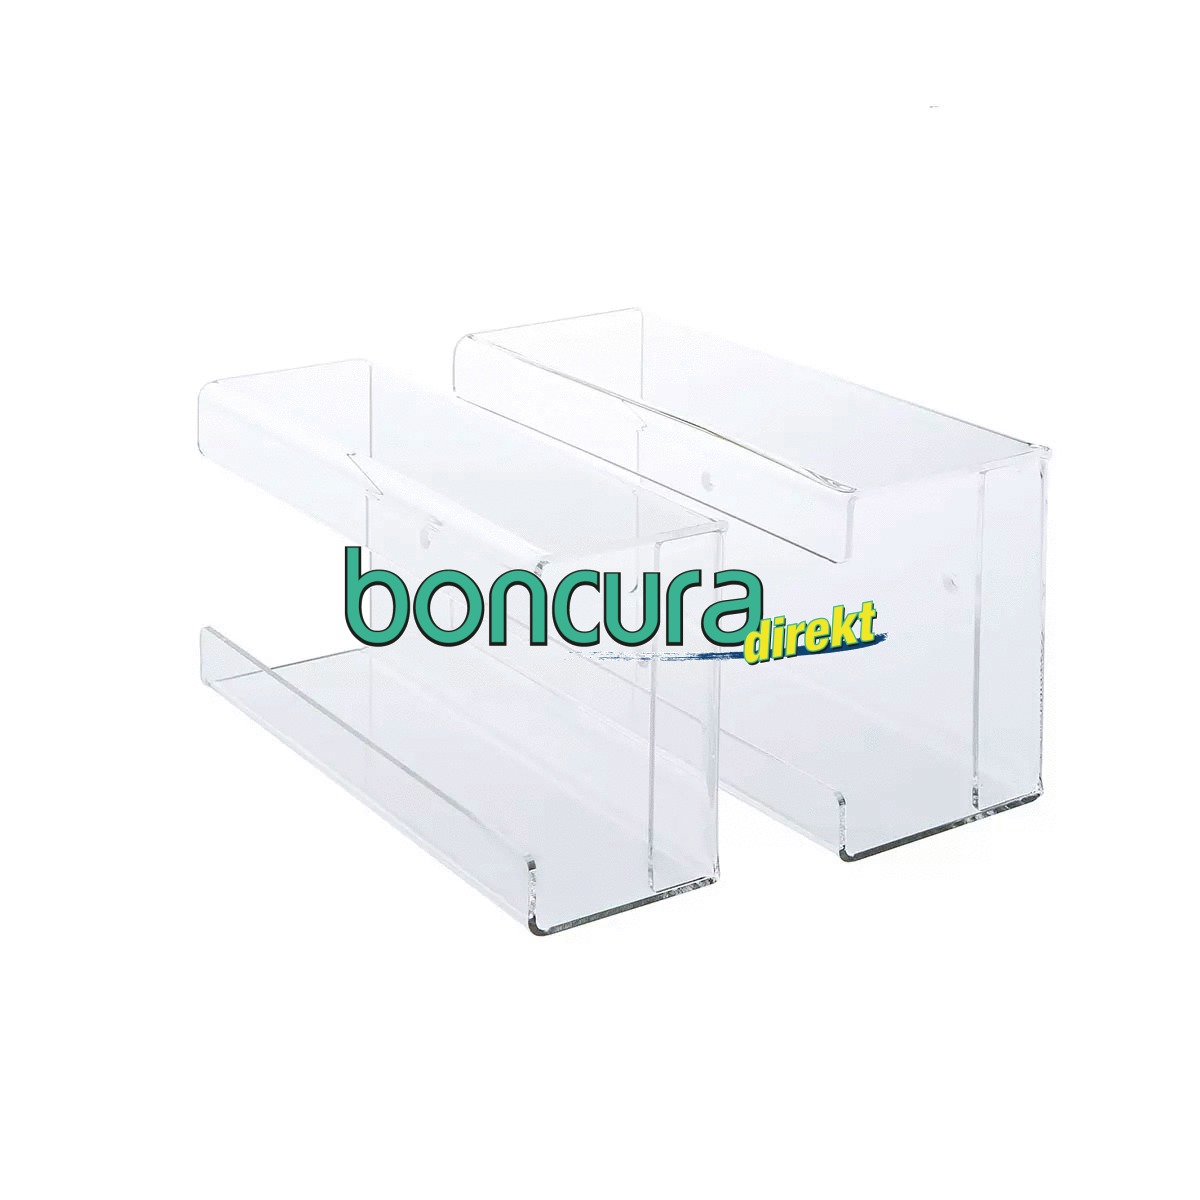 Handschuhbox-Dispenserhalterung, Plexiglas/Acryl Für eine Handschuhbox. Größe: M